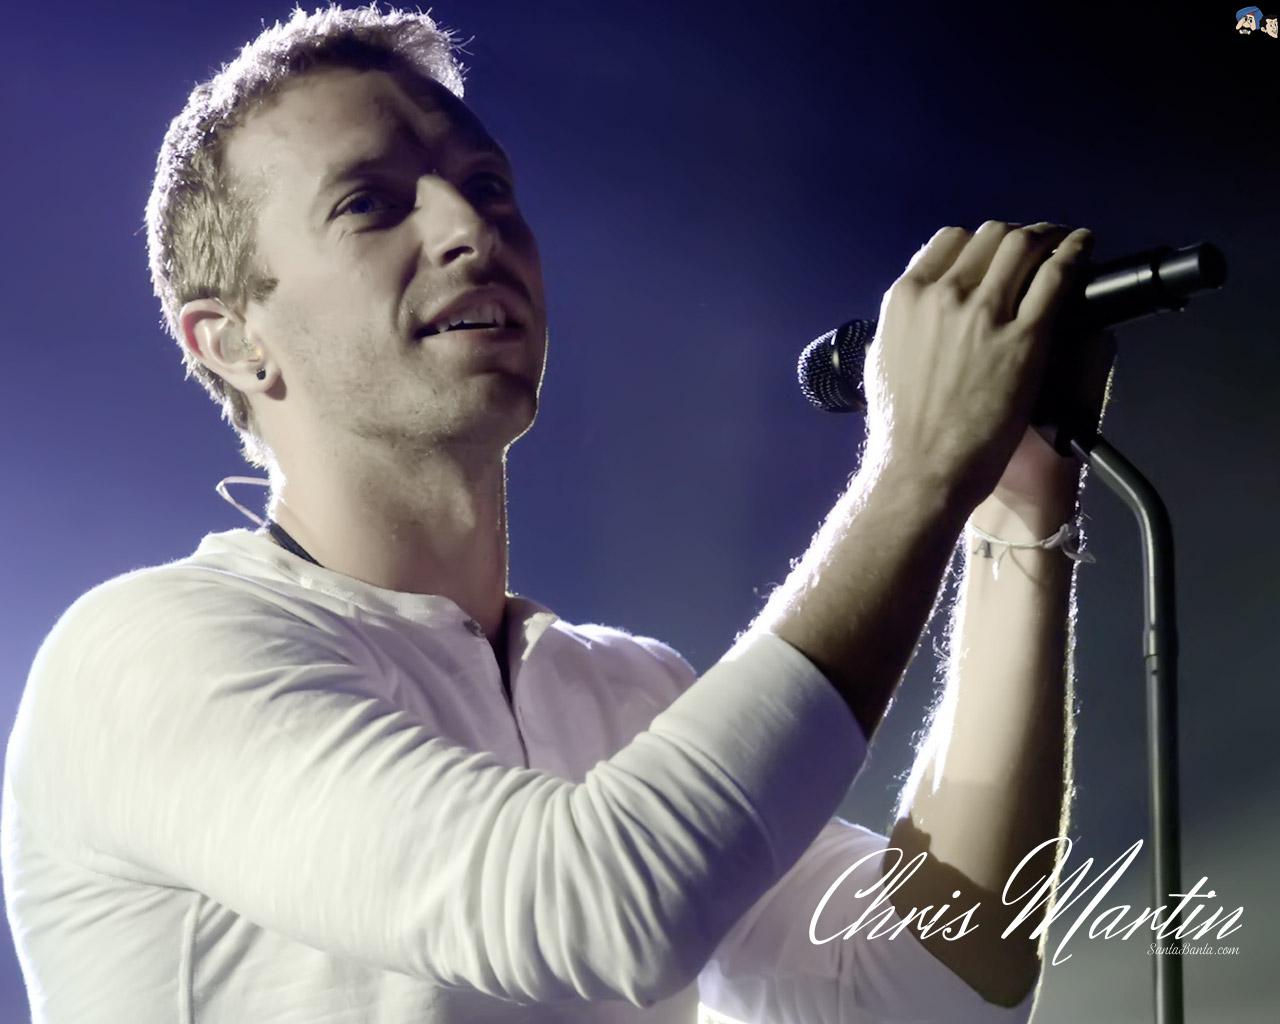 Chris Martin - Sky Full Of Stars Avicii Singer - HD Wallpaper 